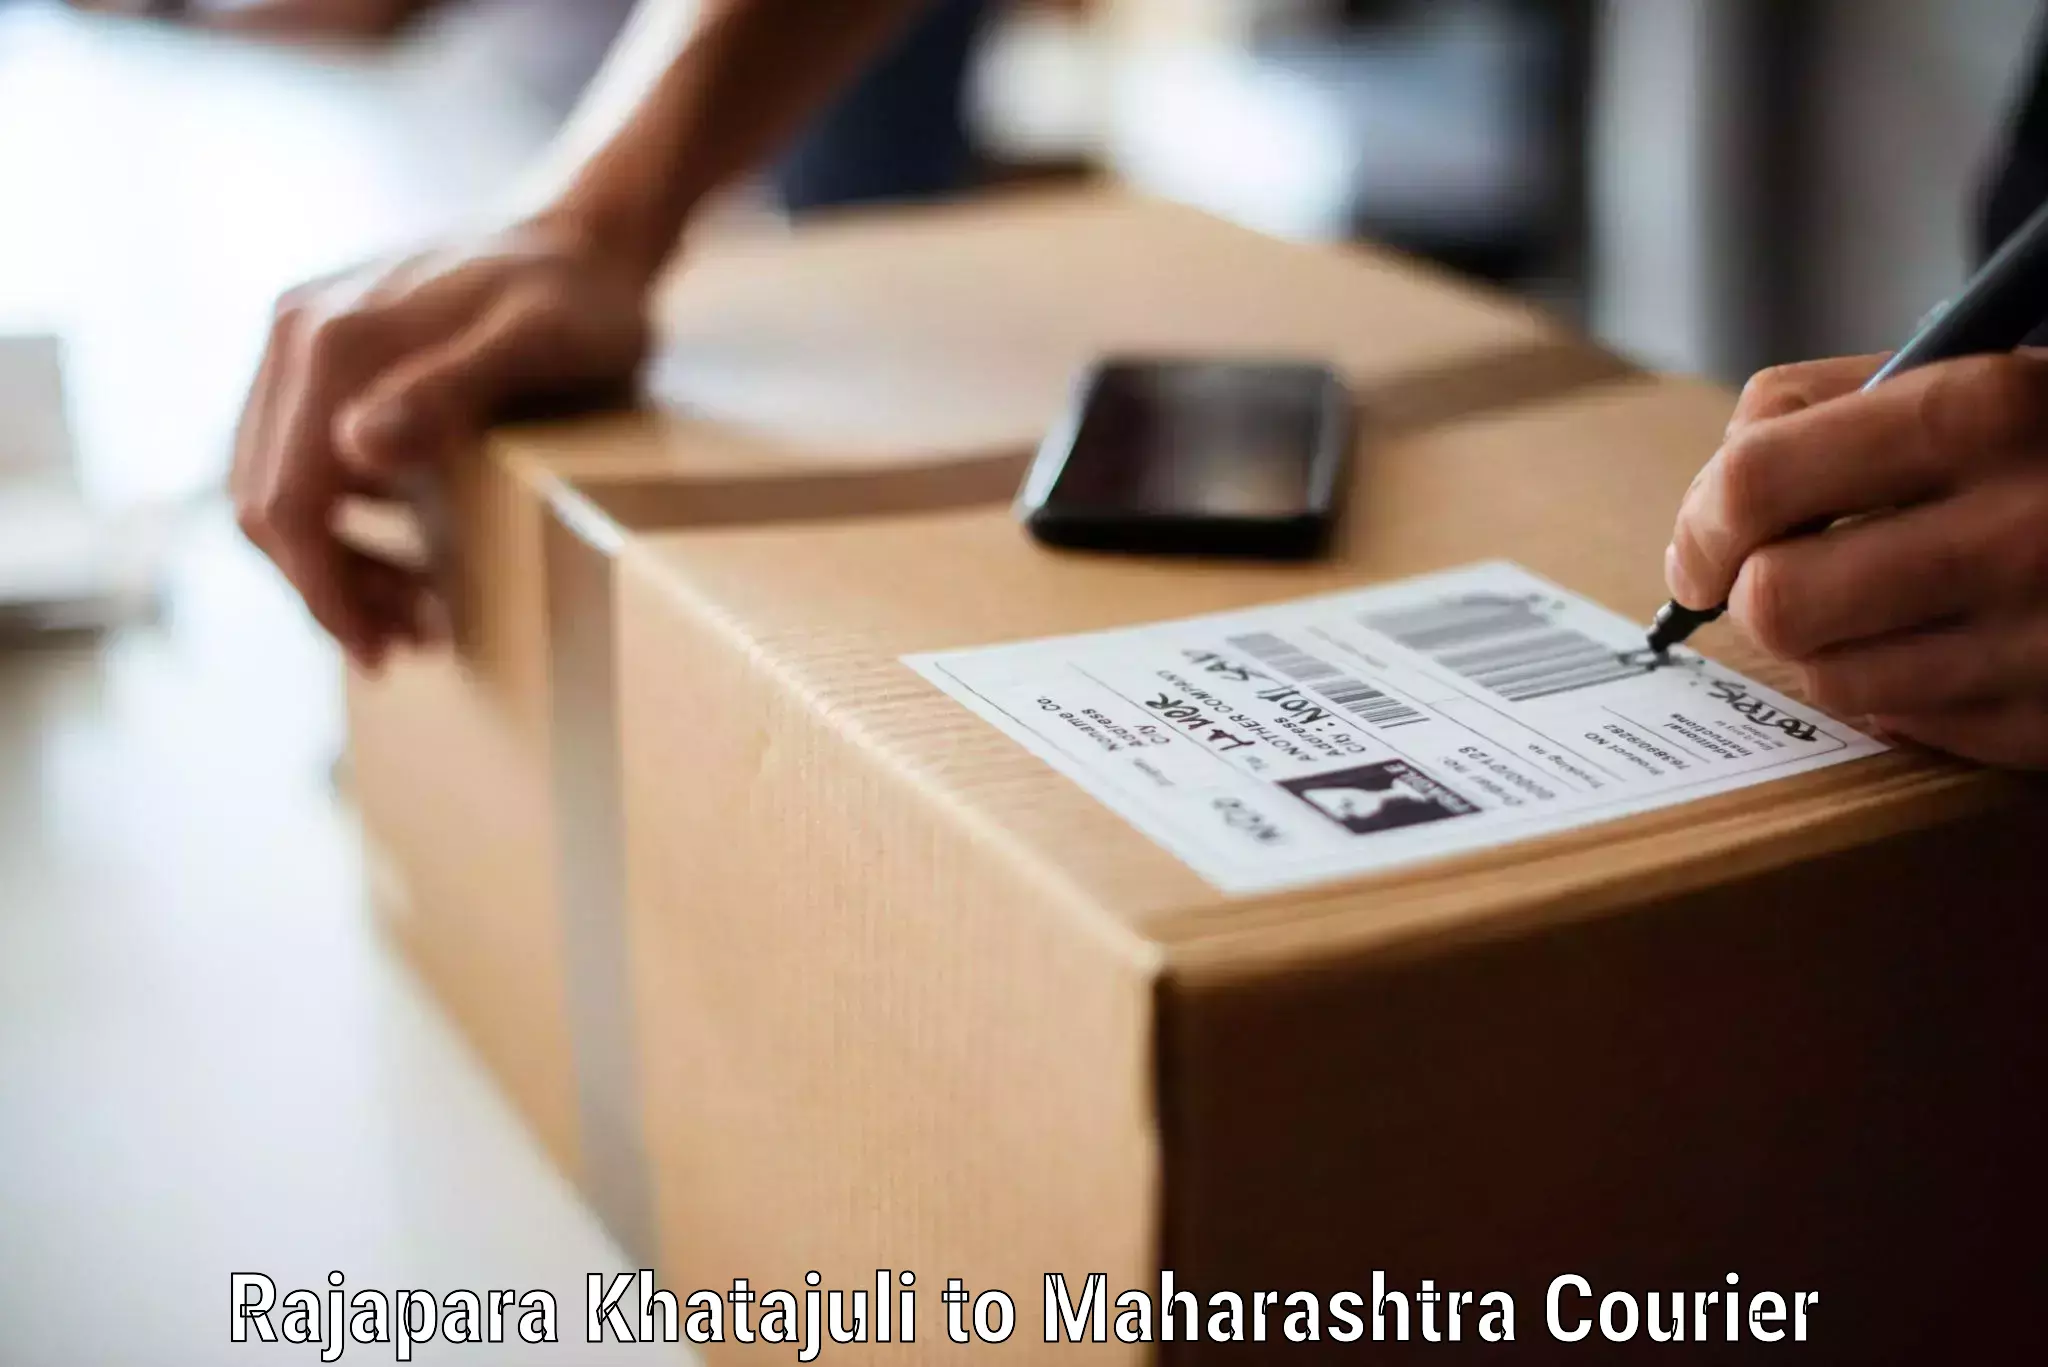 Household goods movers and packers Rajapara Khatajuli to Maharashtra